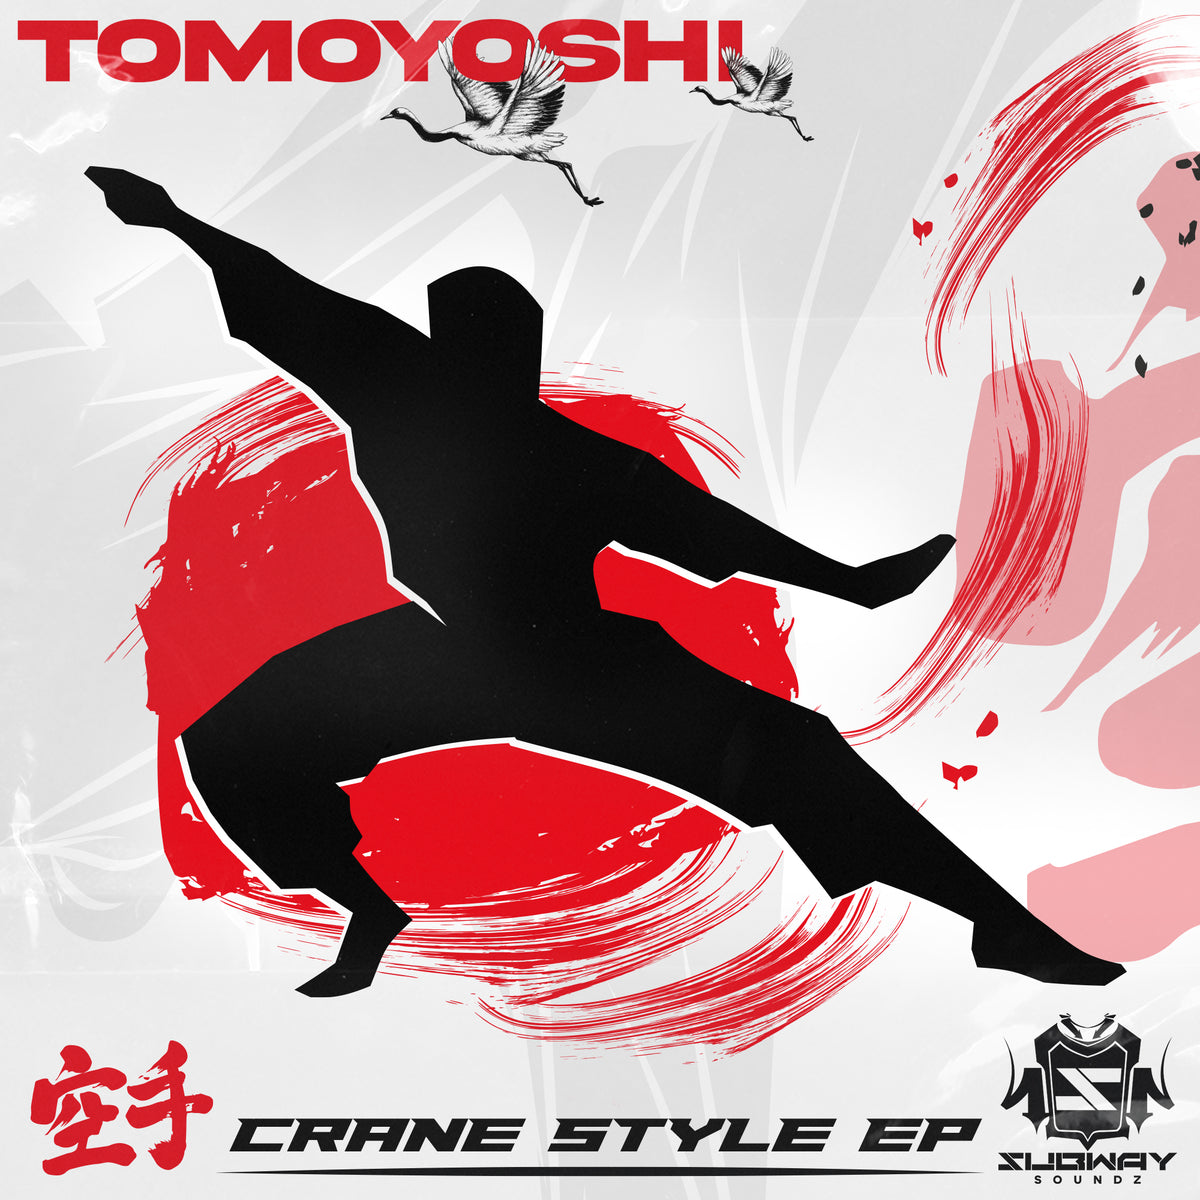 SSLD 183 - Tomoyoshi 'Crane Style EP'